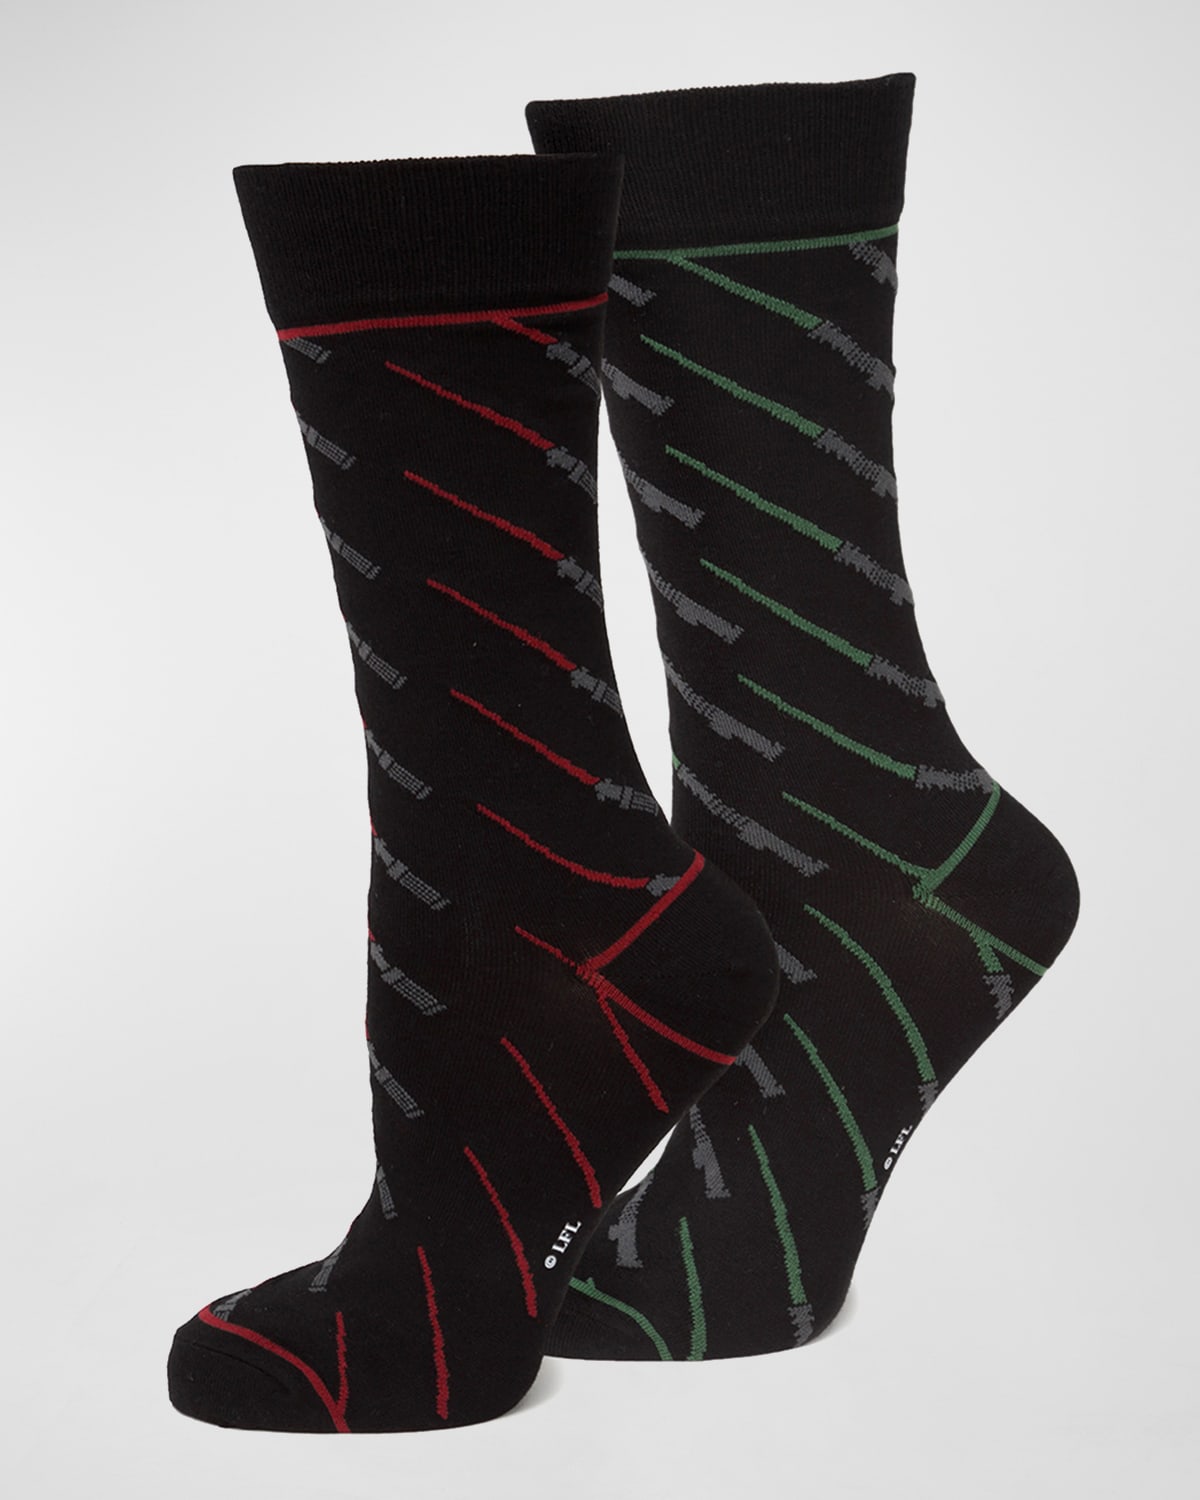 Men's Star Wars Red & Green Lightsaber Socks